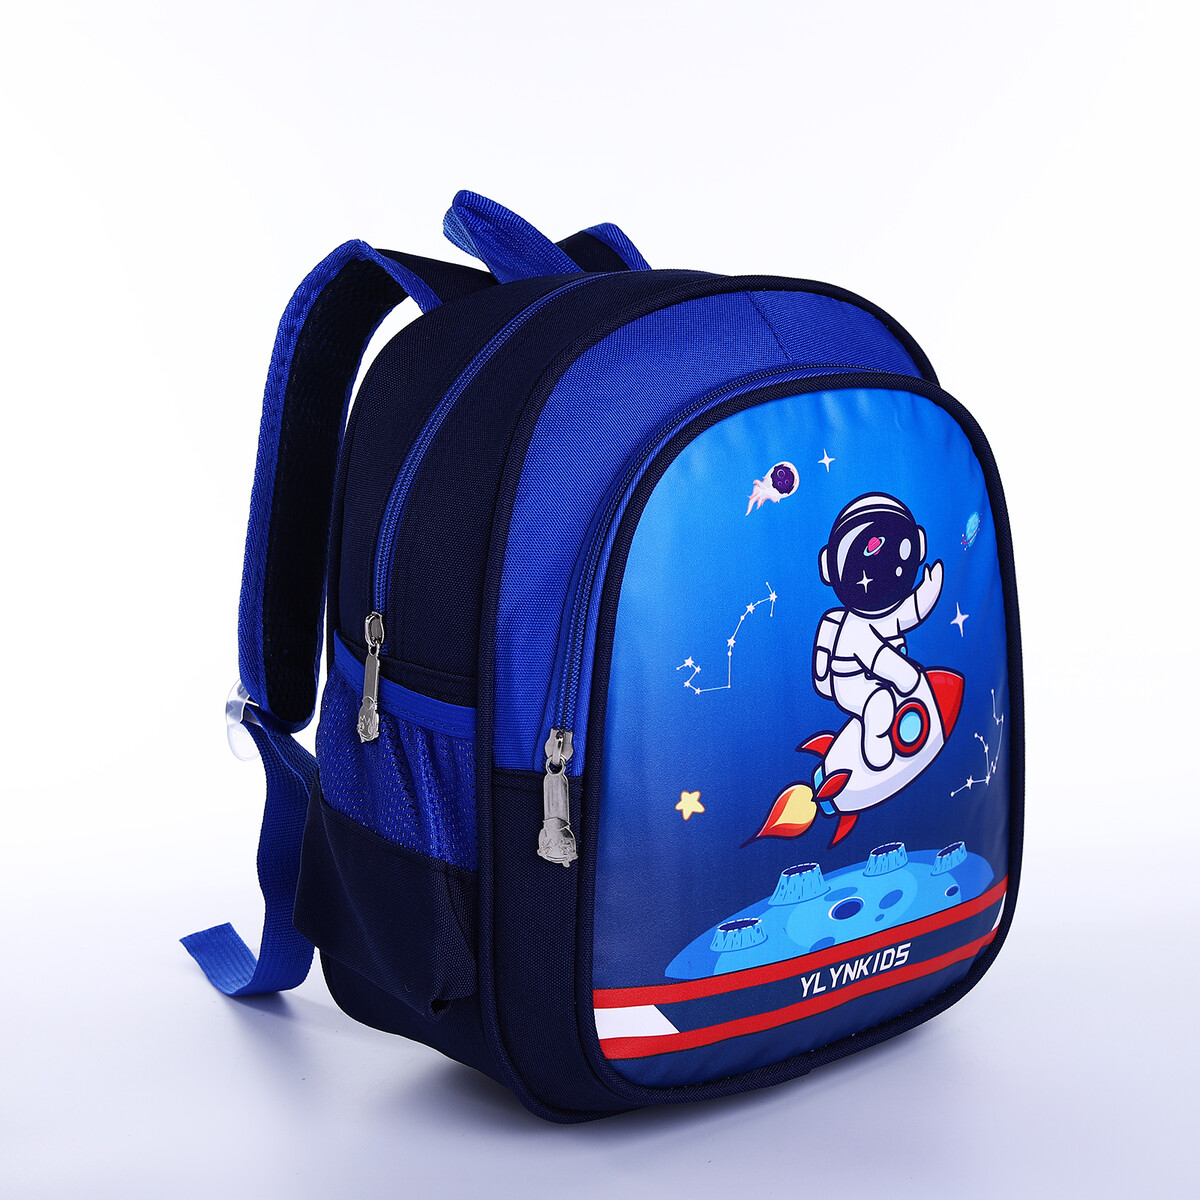 Рюкзак детский на молнии, 3 наружных кармана, цвет синий рюкзак сумка из текстиля на молнии 3 кармана отдел для ноутбука синий